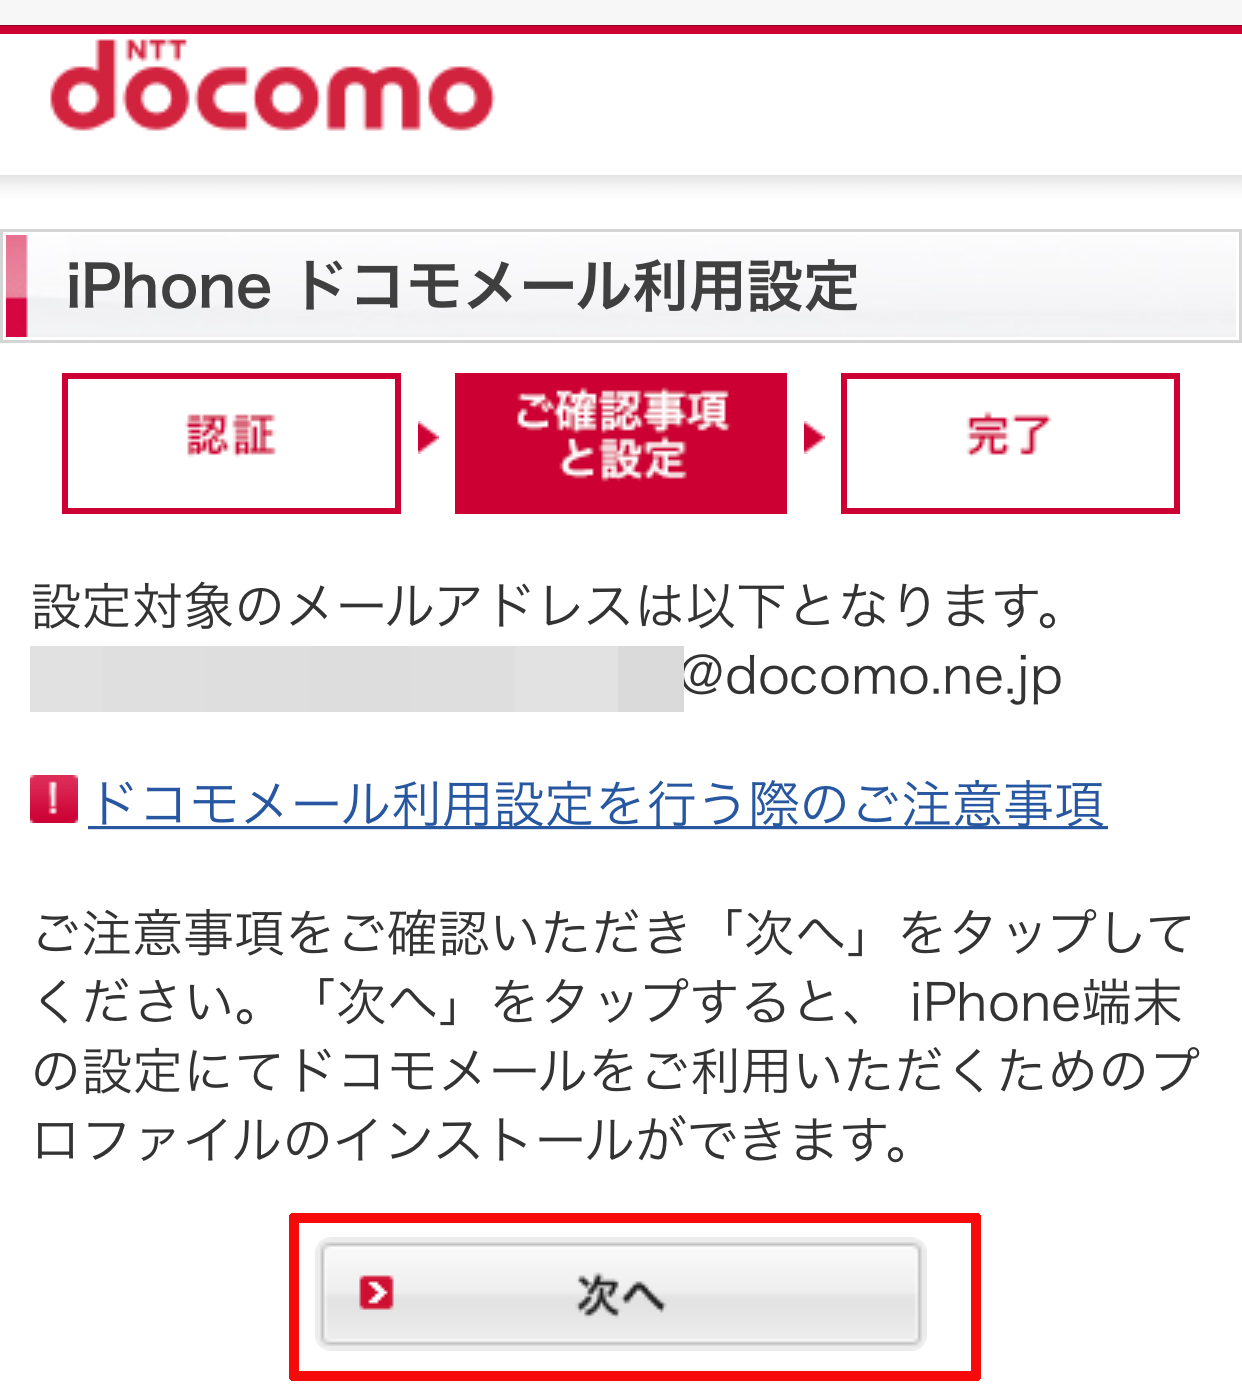 「iPhone ドコモメール利用設定」というページが表示されますので、「次へ」をタップします。